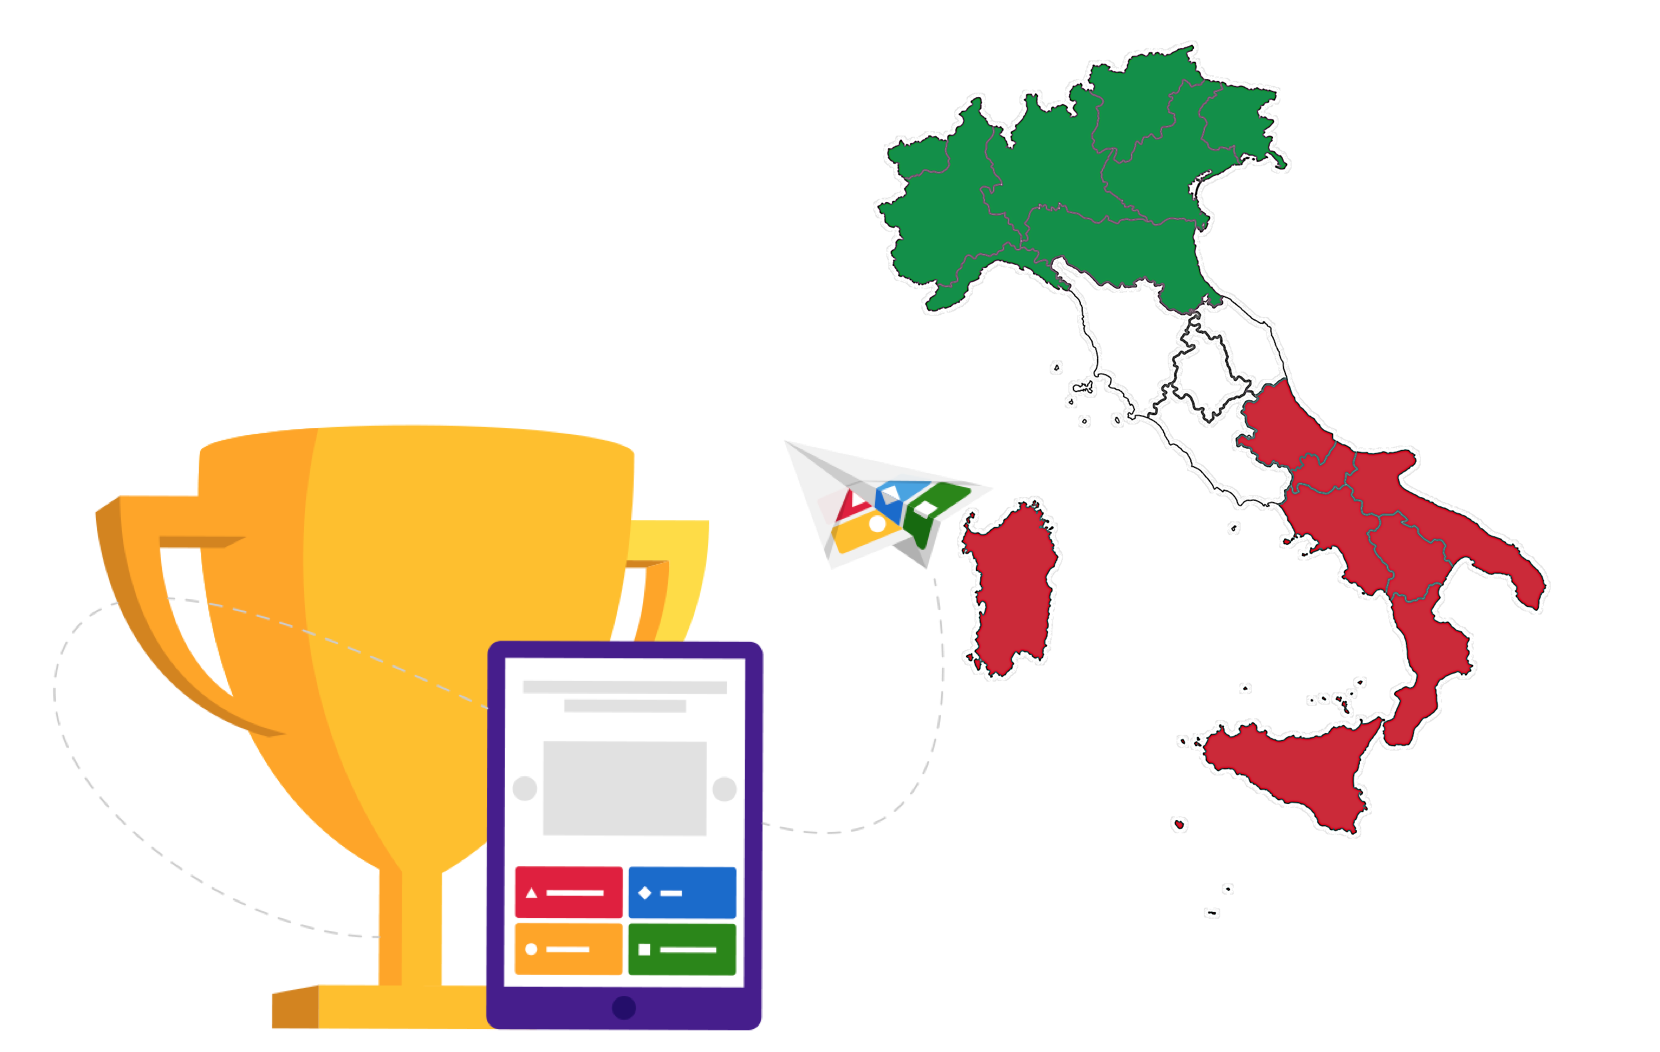 Примите участие в викторине «Регионы Италии»